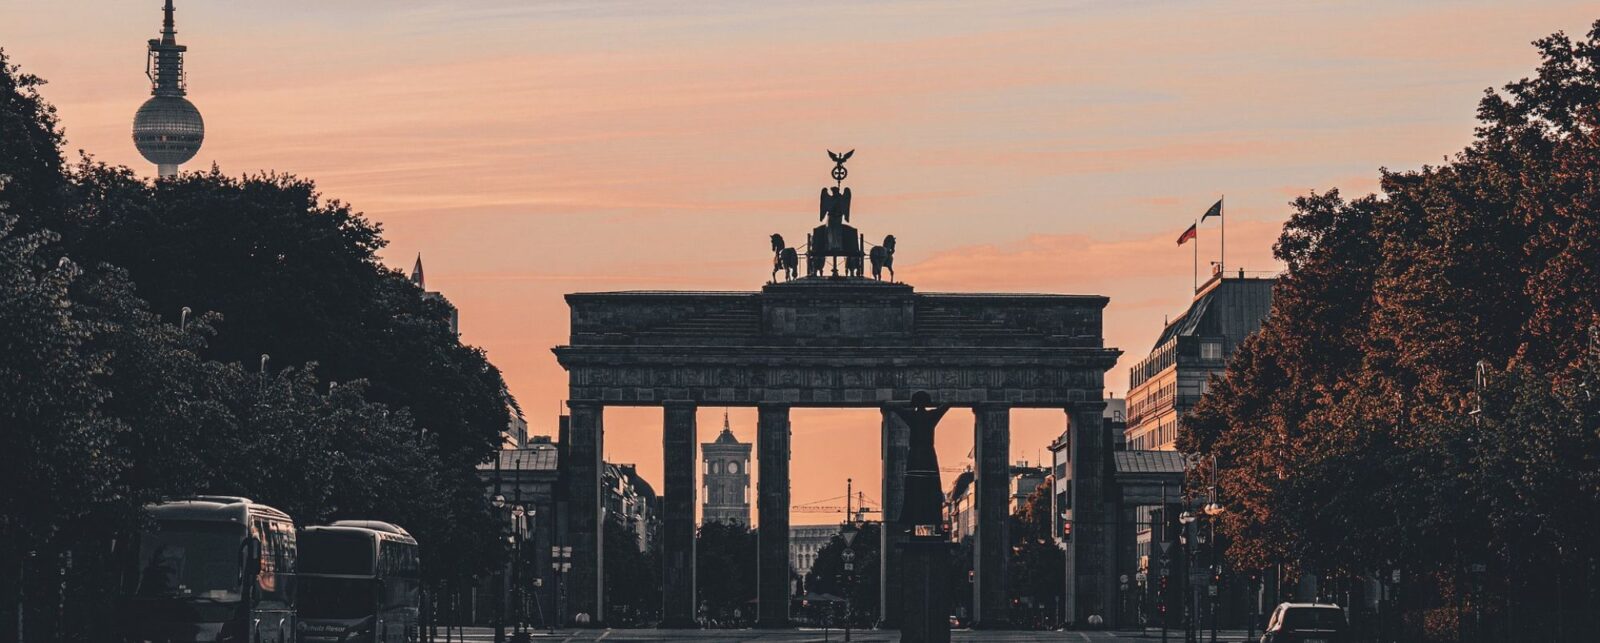 Das Brandenburger Tor in Berlin bei Sonnenuntergang